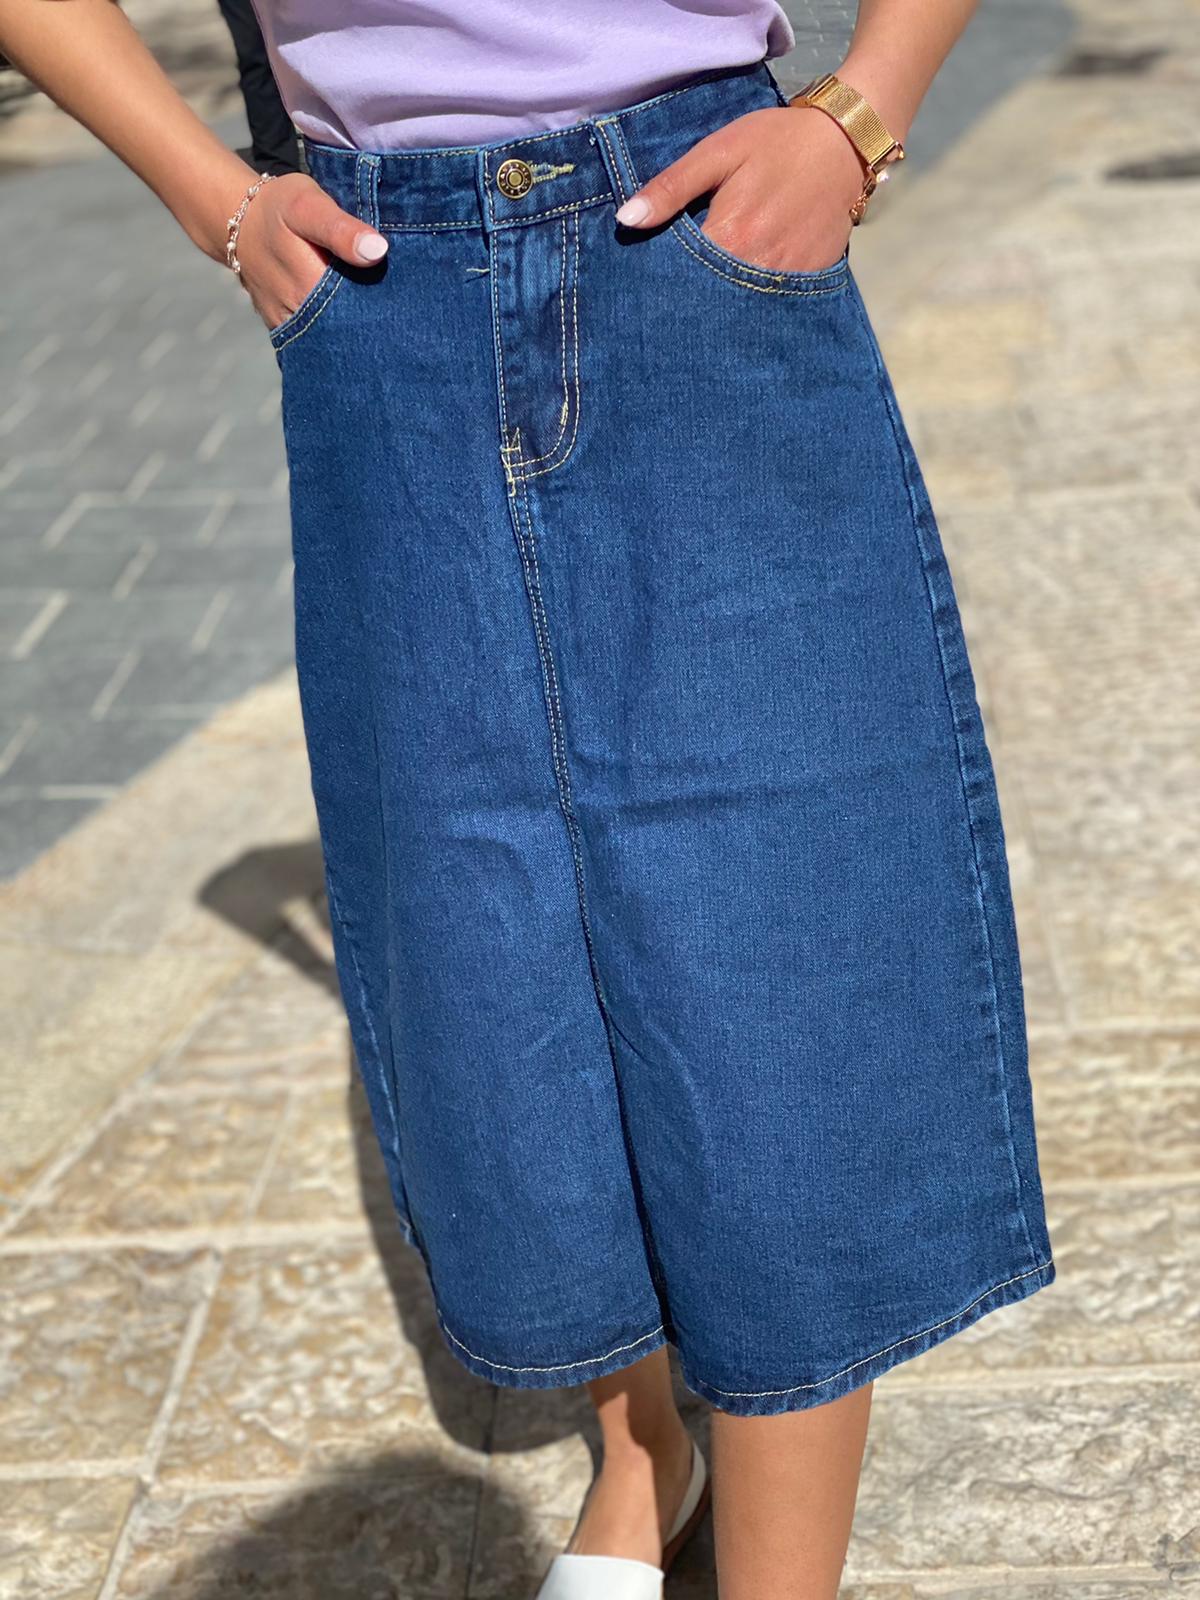 ארוכה -מיני אלנביA חצאית ג'ינס גזרה – MiniAllenby